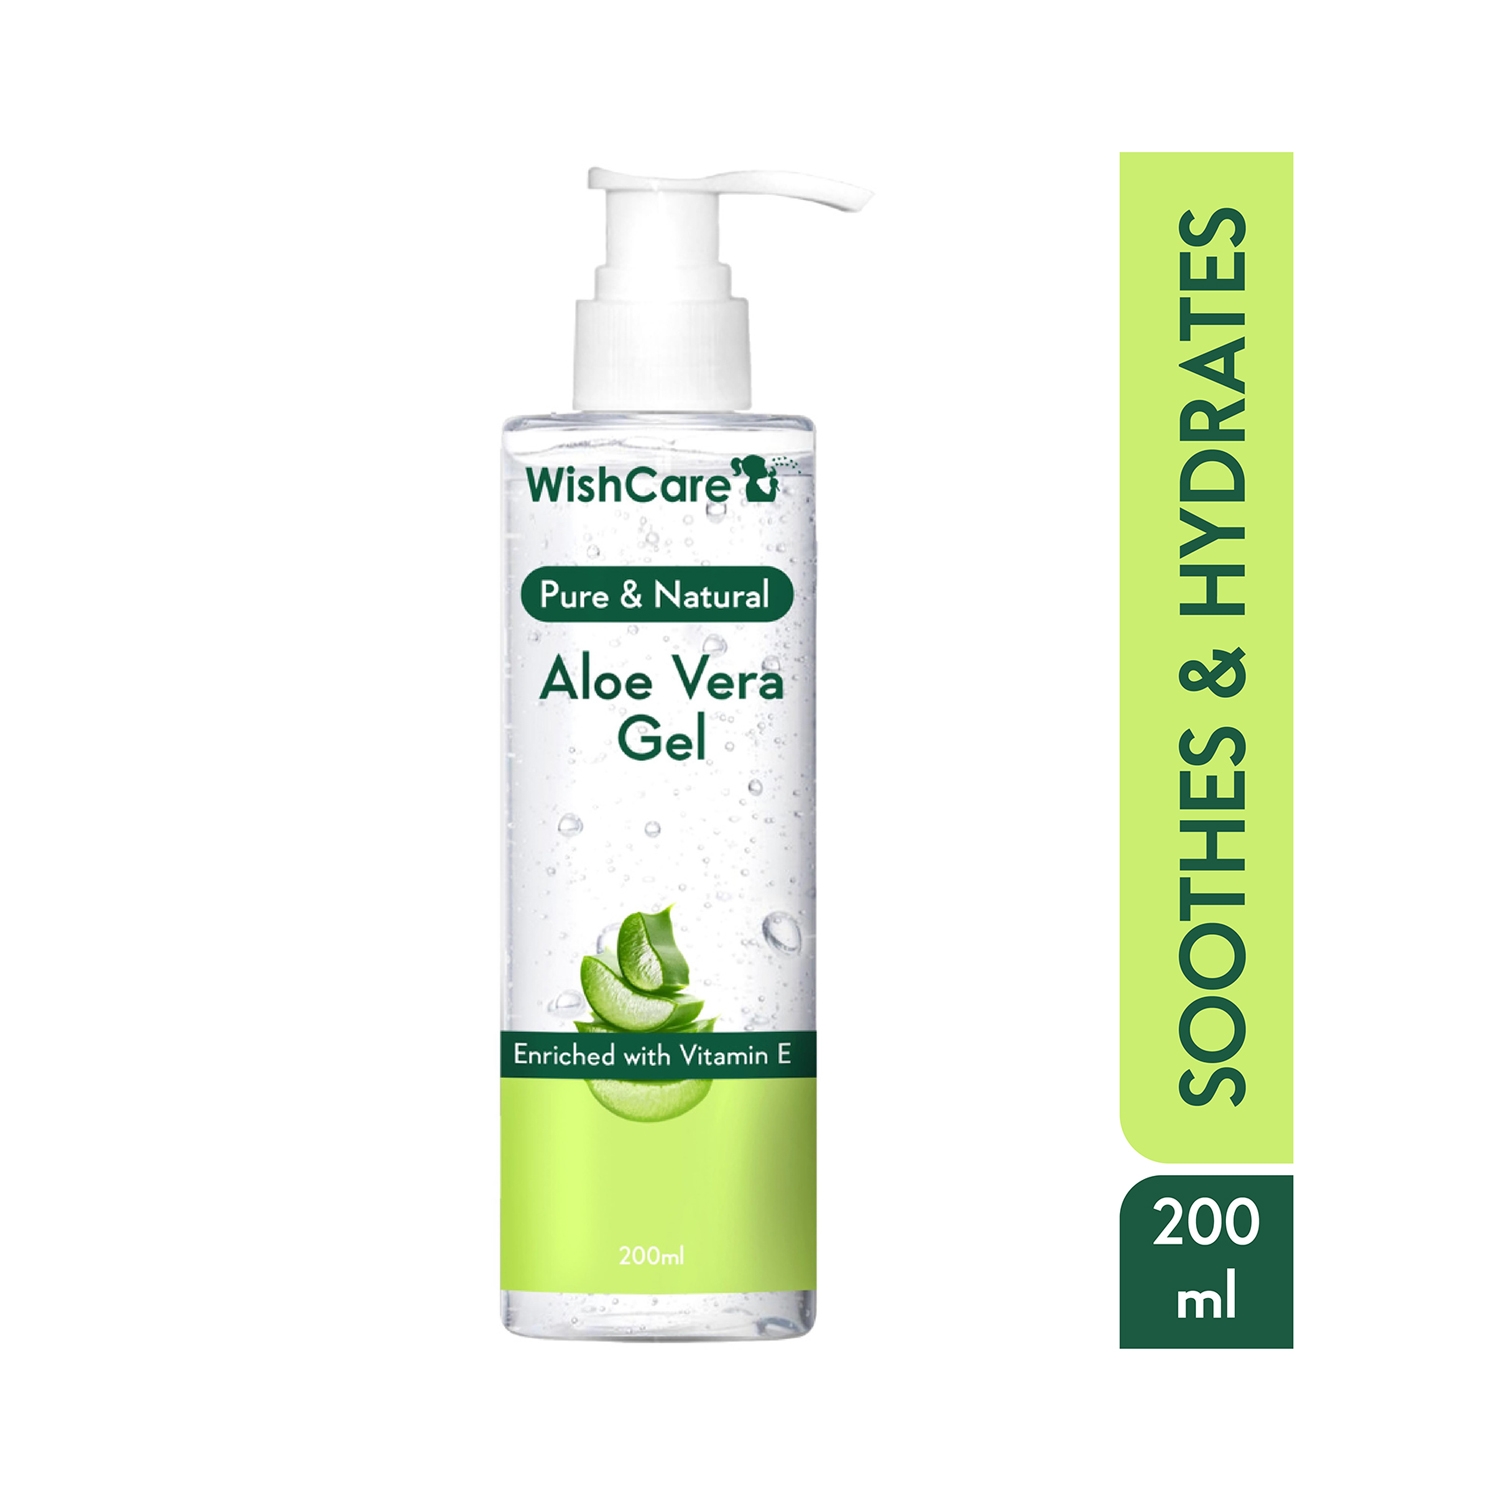 WishCare | WishCare Pure & Natural Aloe Vera Gel Enriched with Vitamin E (200ml)